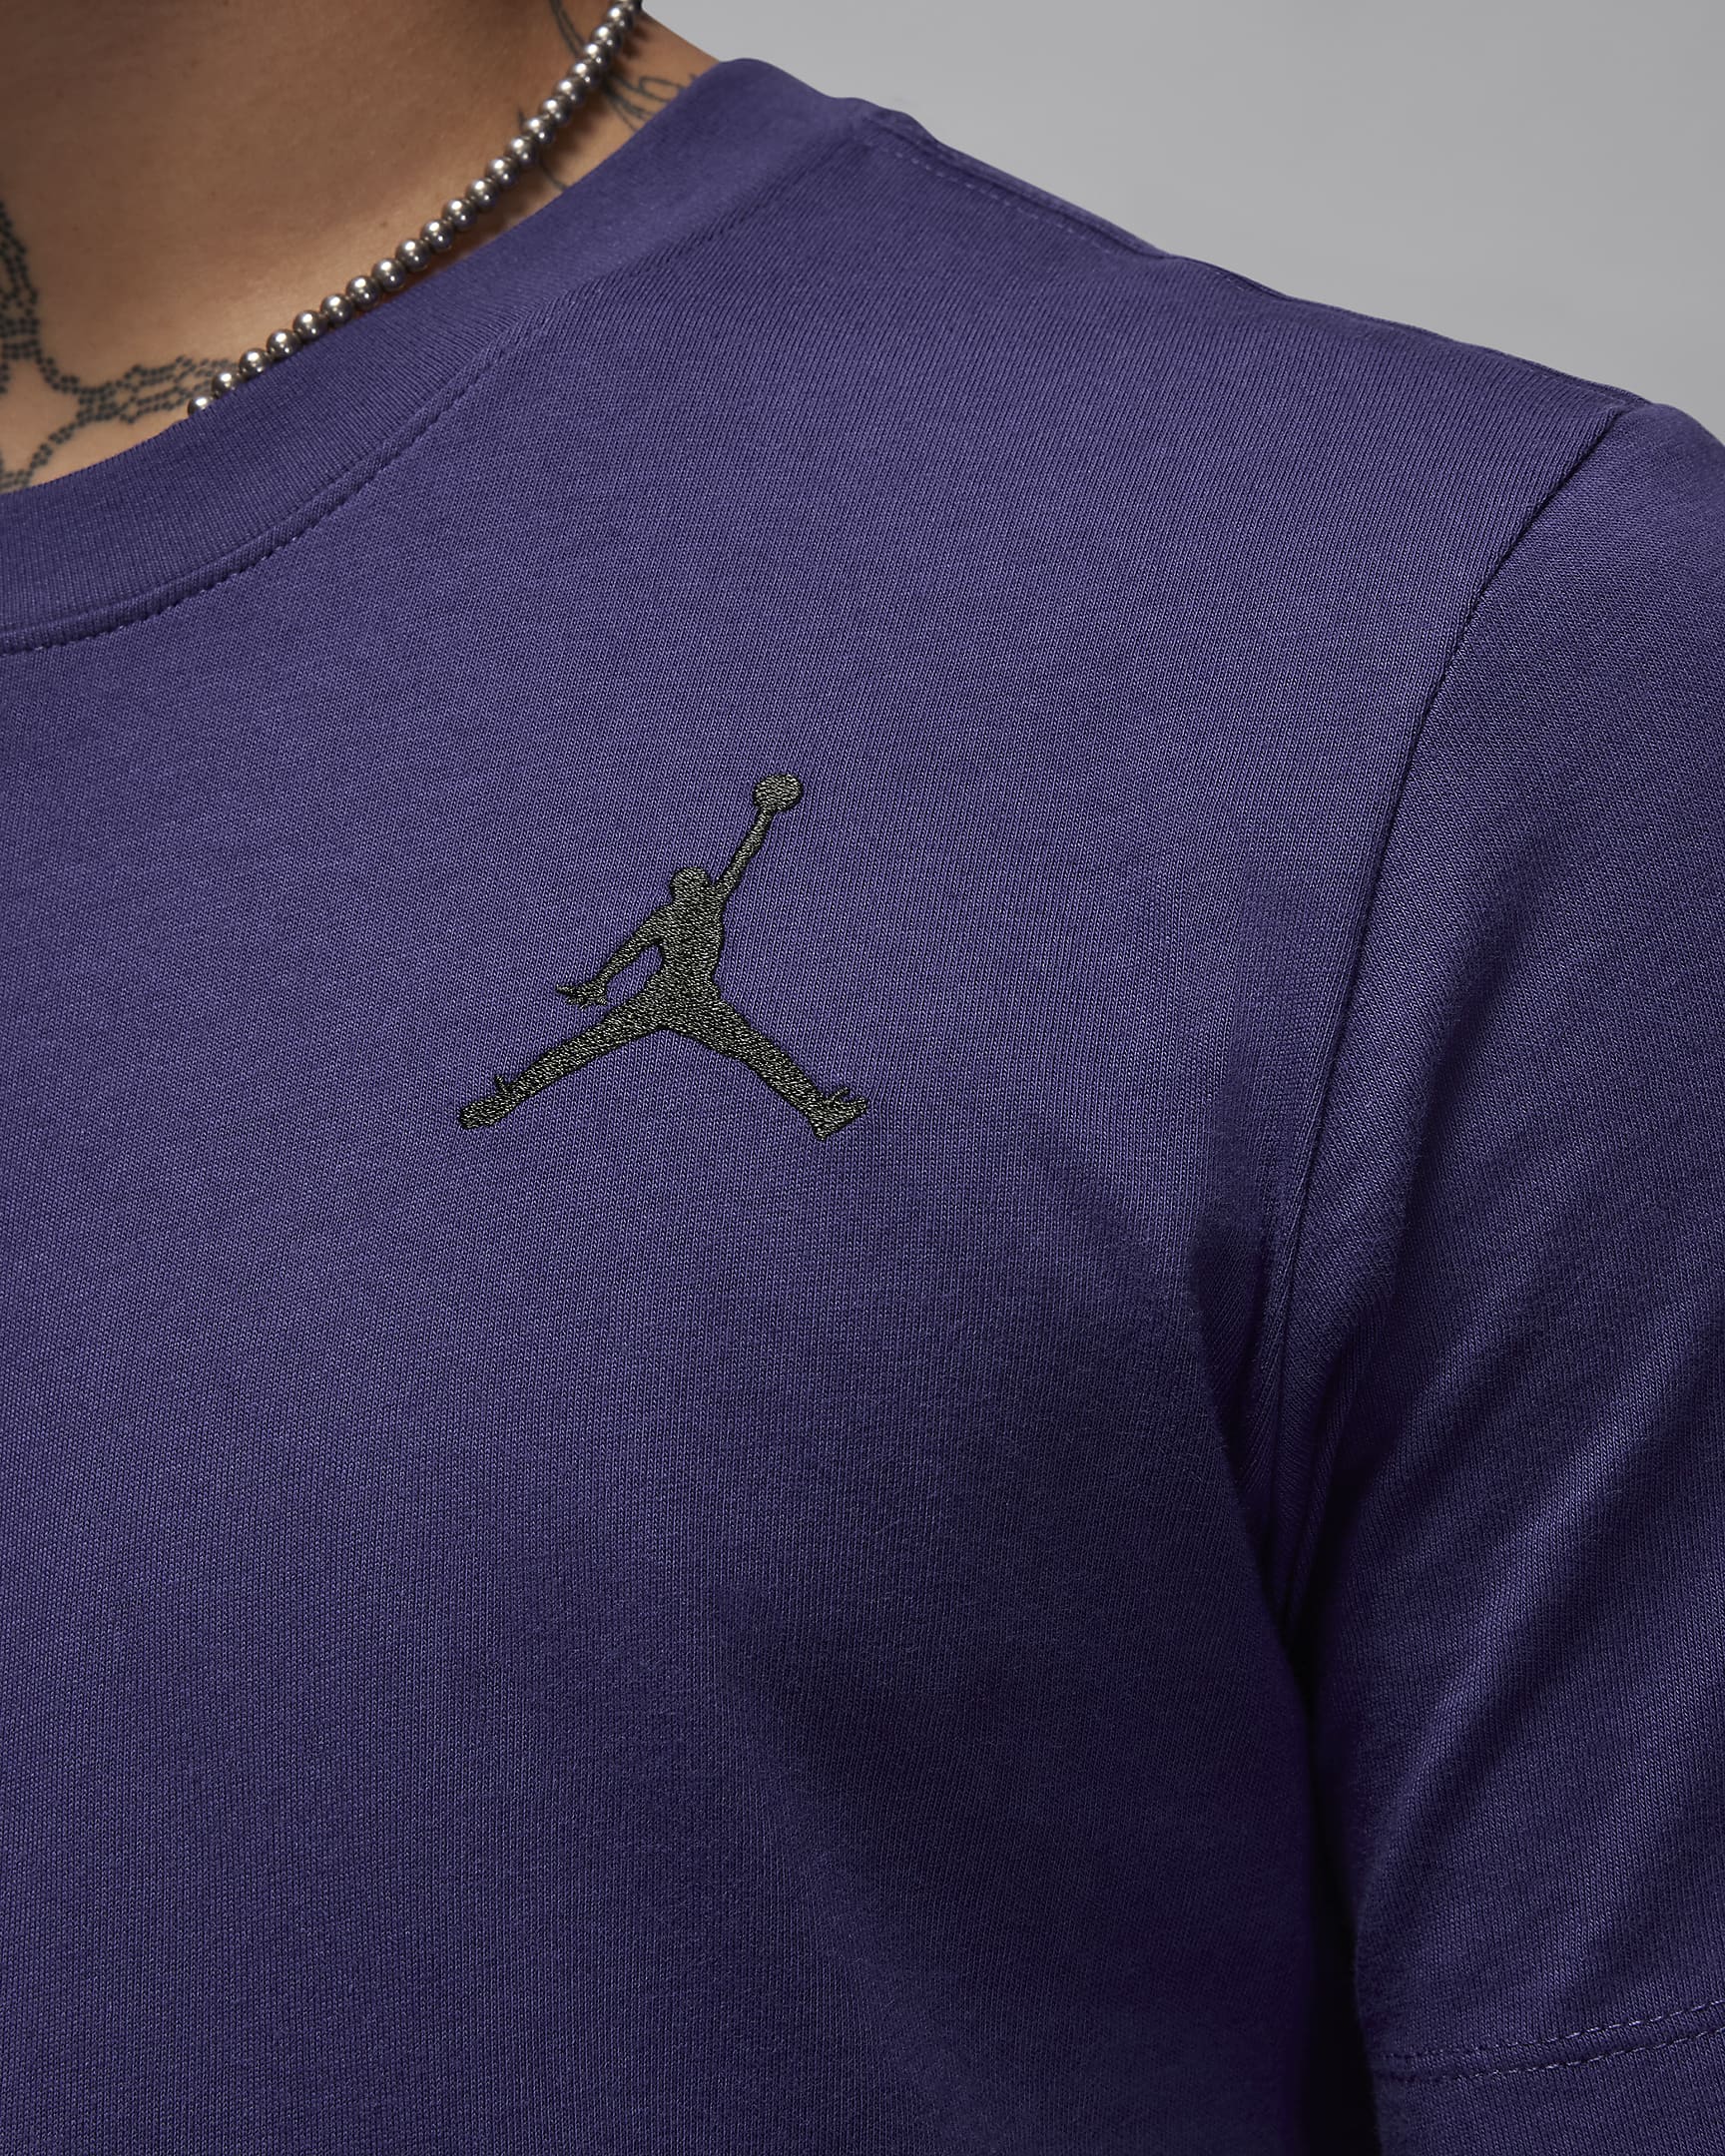 Jordan Jumpman Men's Short-Sleeve T-Shirt. Nike.com